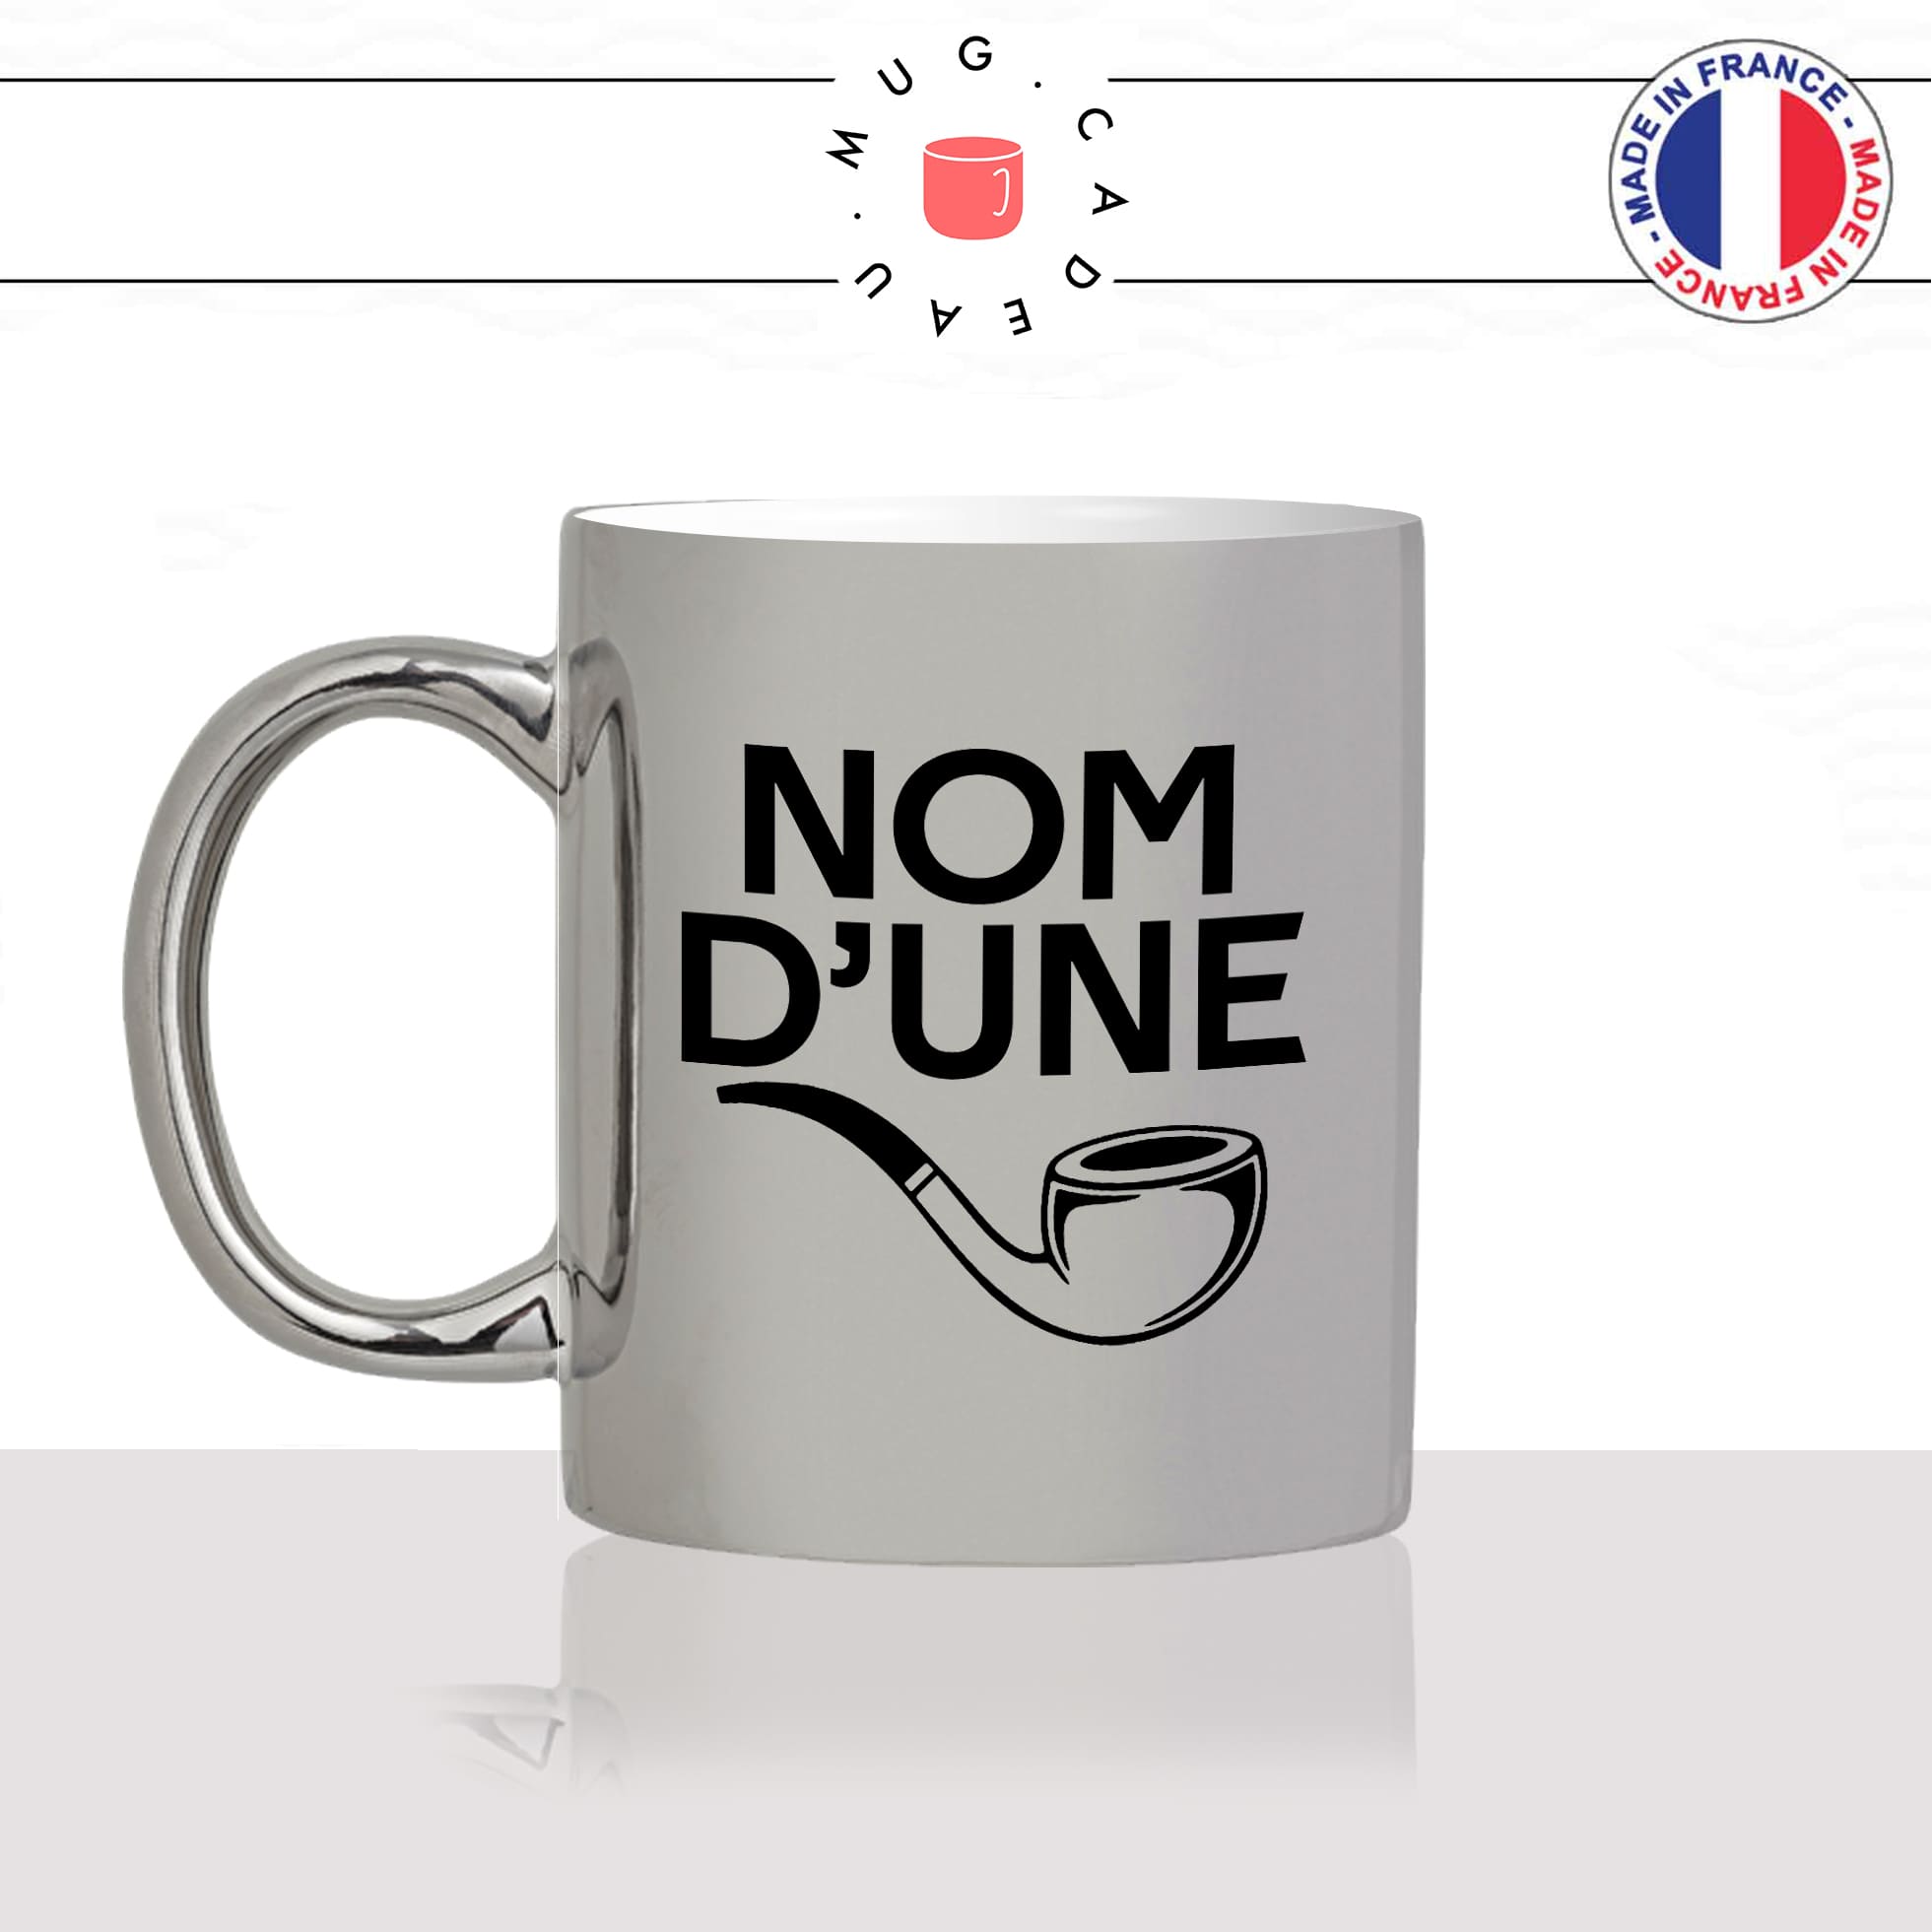 mug-tasse-argenté-argent-gris-silver-nom-dune-pipe-expression-francaise-putin-fumer-fumeur-moustache-humour-fun-idée-cadeau-originale